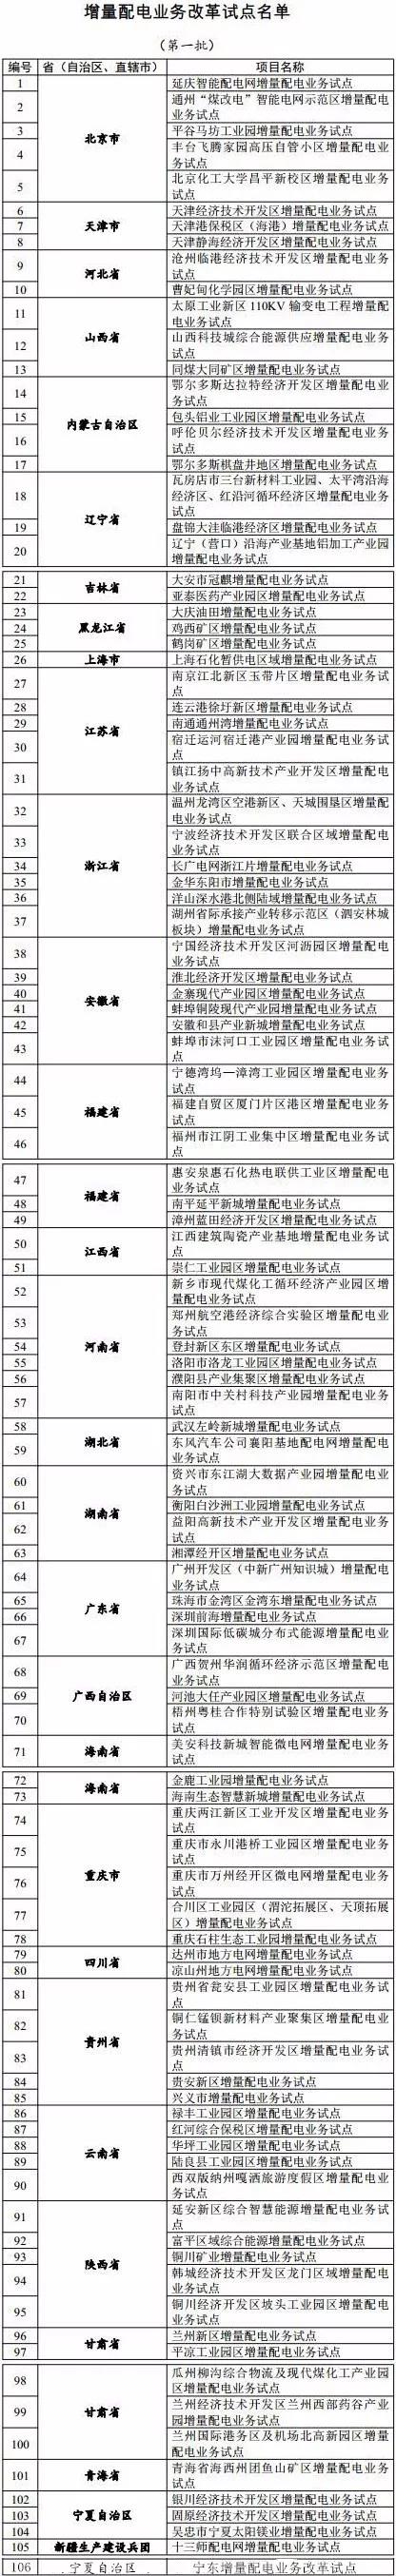 发改委已公布的增量配电业务改革试点名单